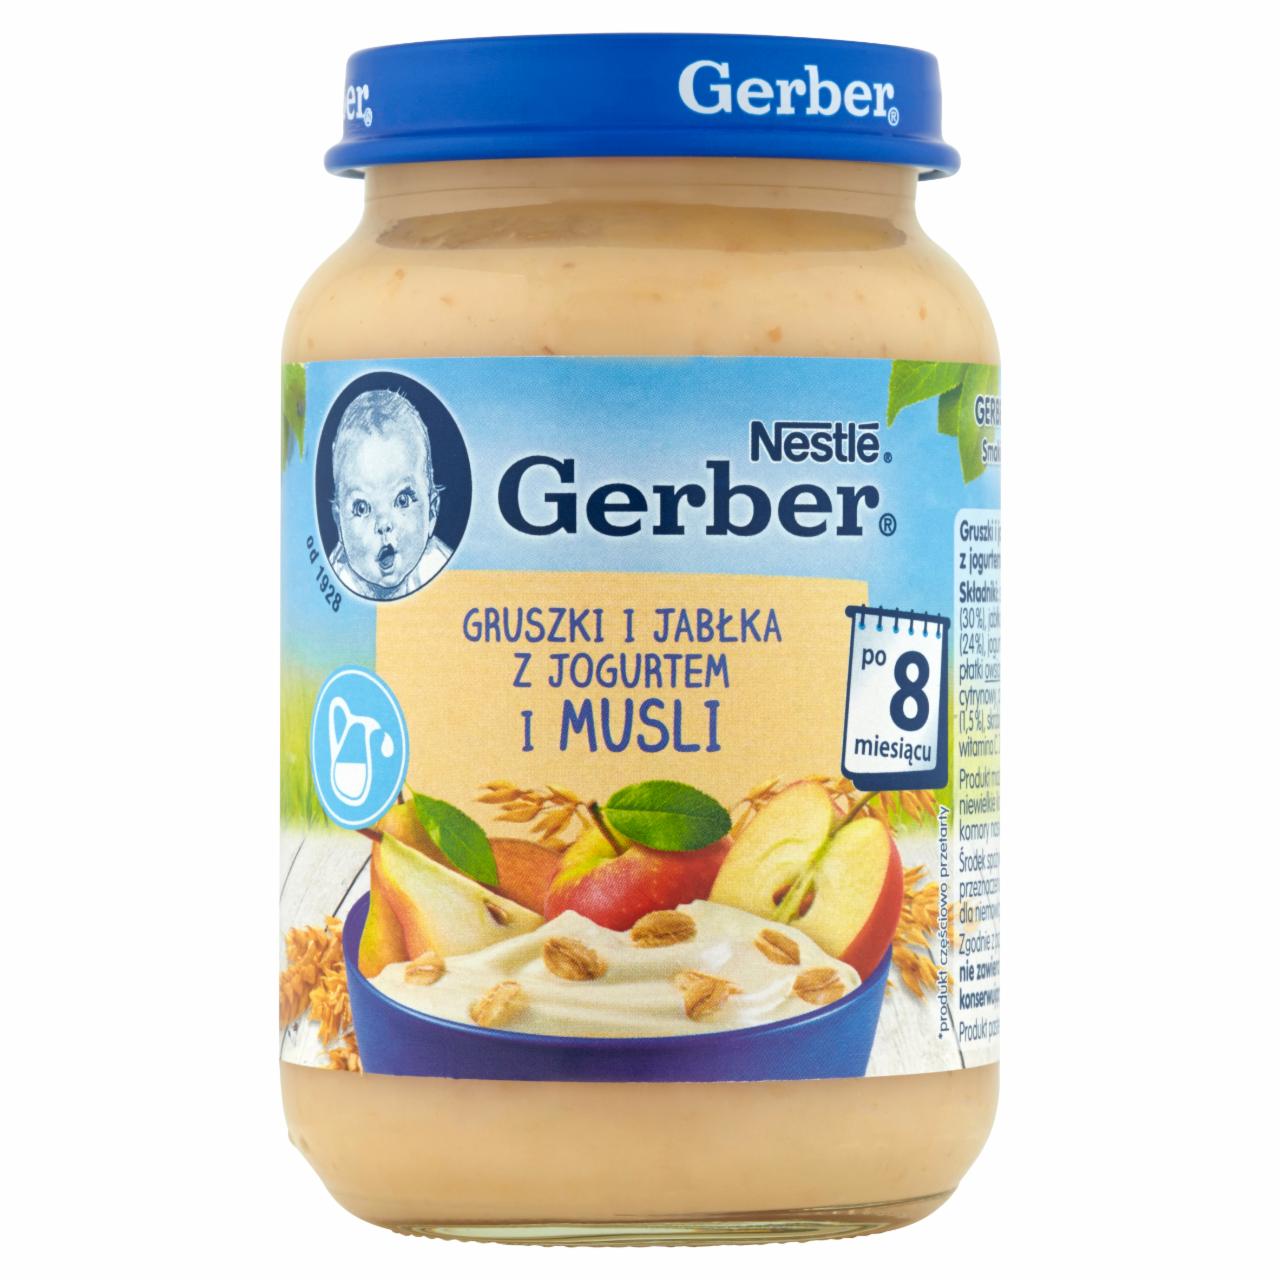 Zdjęcia - Gerber Gruszki i jabłka z jogurtem i musli po 8 miesiącu 190 g